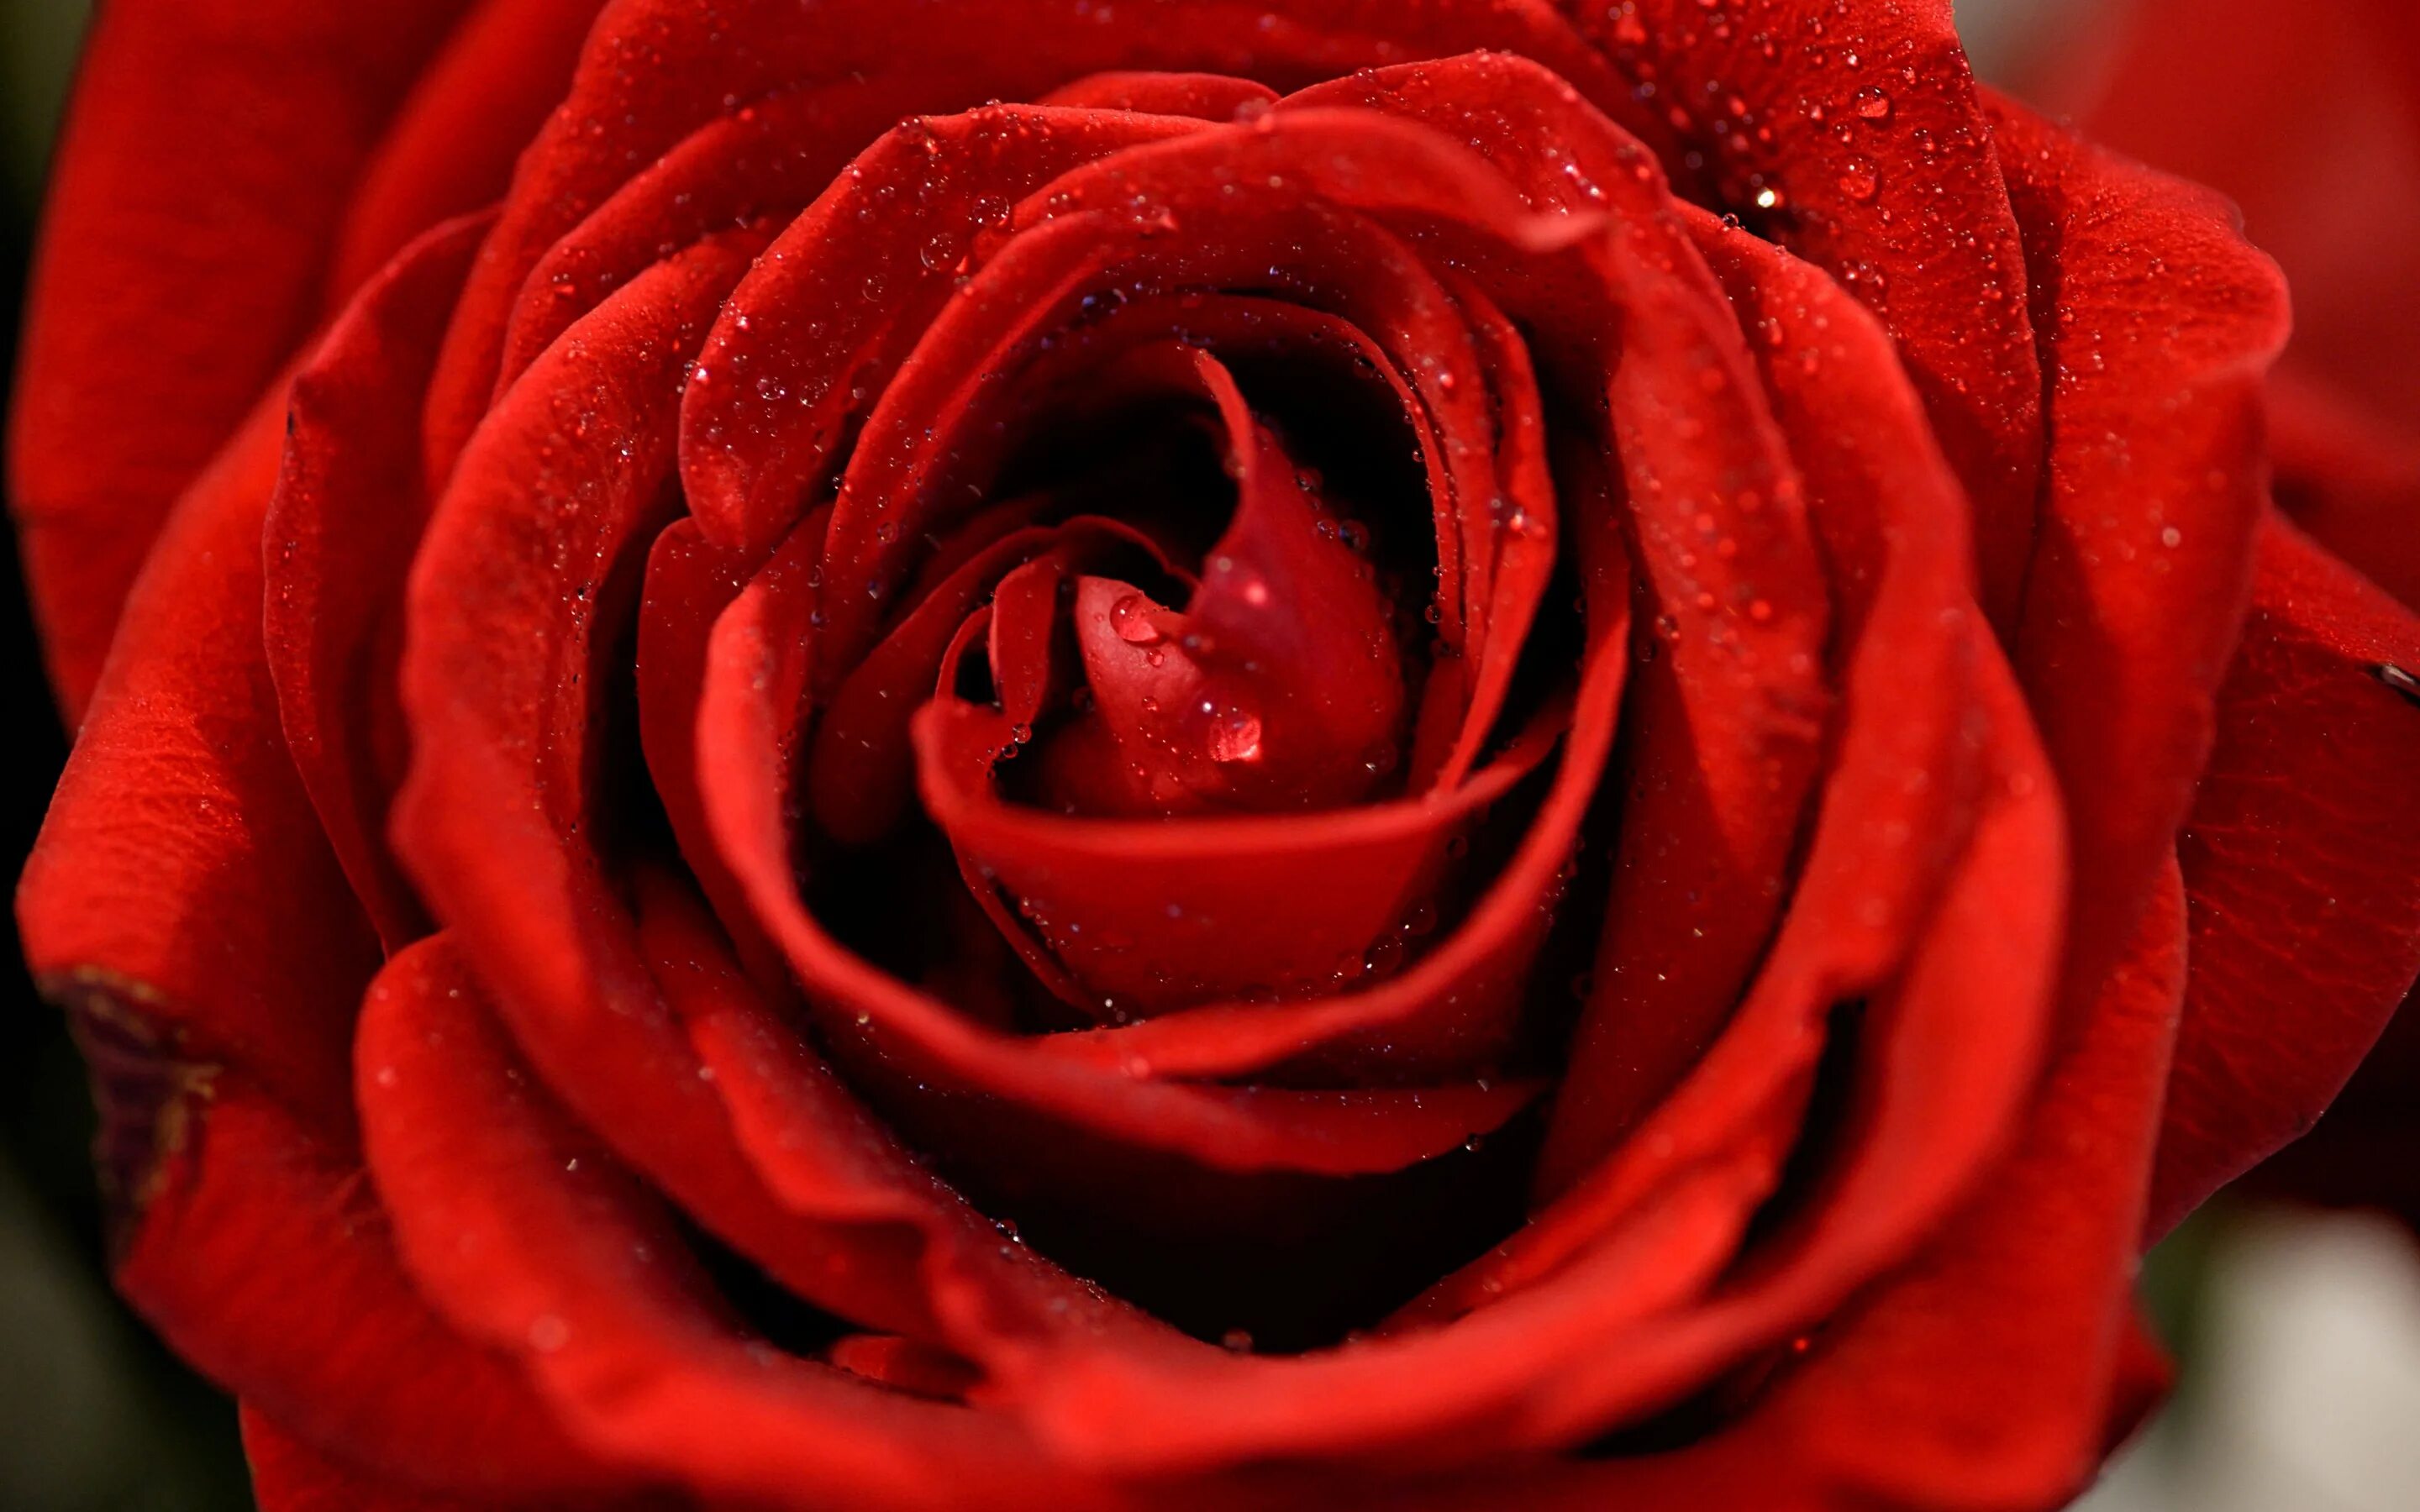 Цветы розы красные. Ред ред Роуз. Бутон красной розы. Красивые красные розы. Красивый красный.